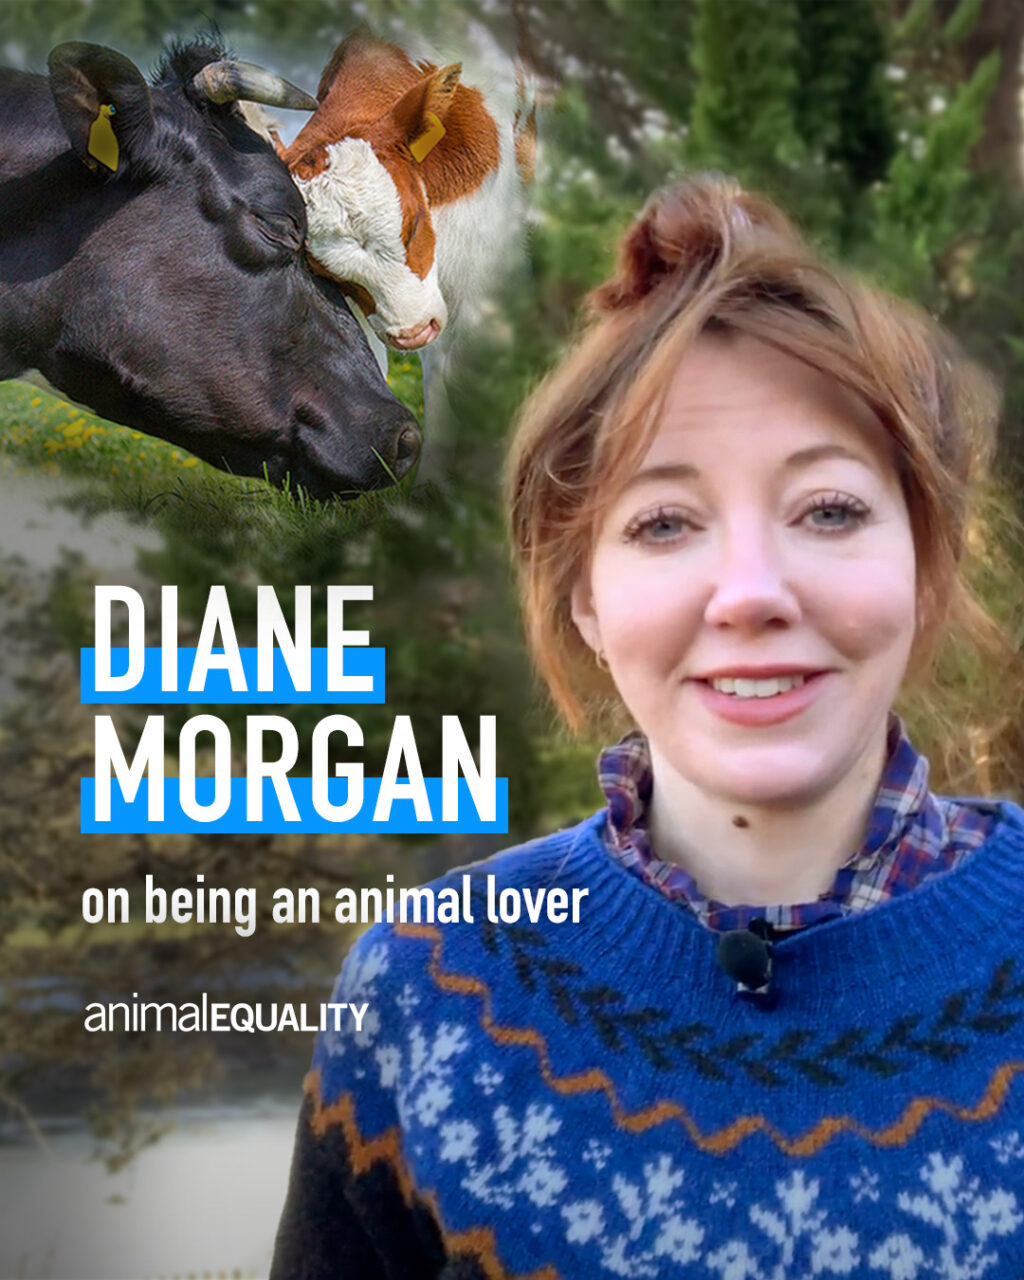 La star di Netflix Diane Morgan ha incoraggiato i suoi fan a firmare la petizione di Animal Equality per punire chi maltratta gli animali